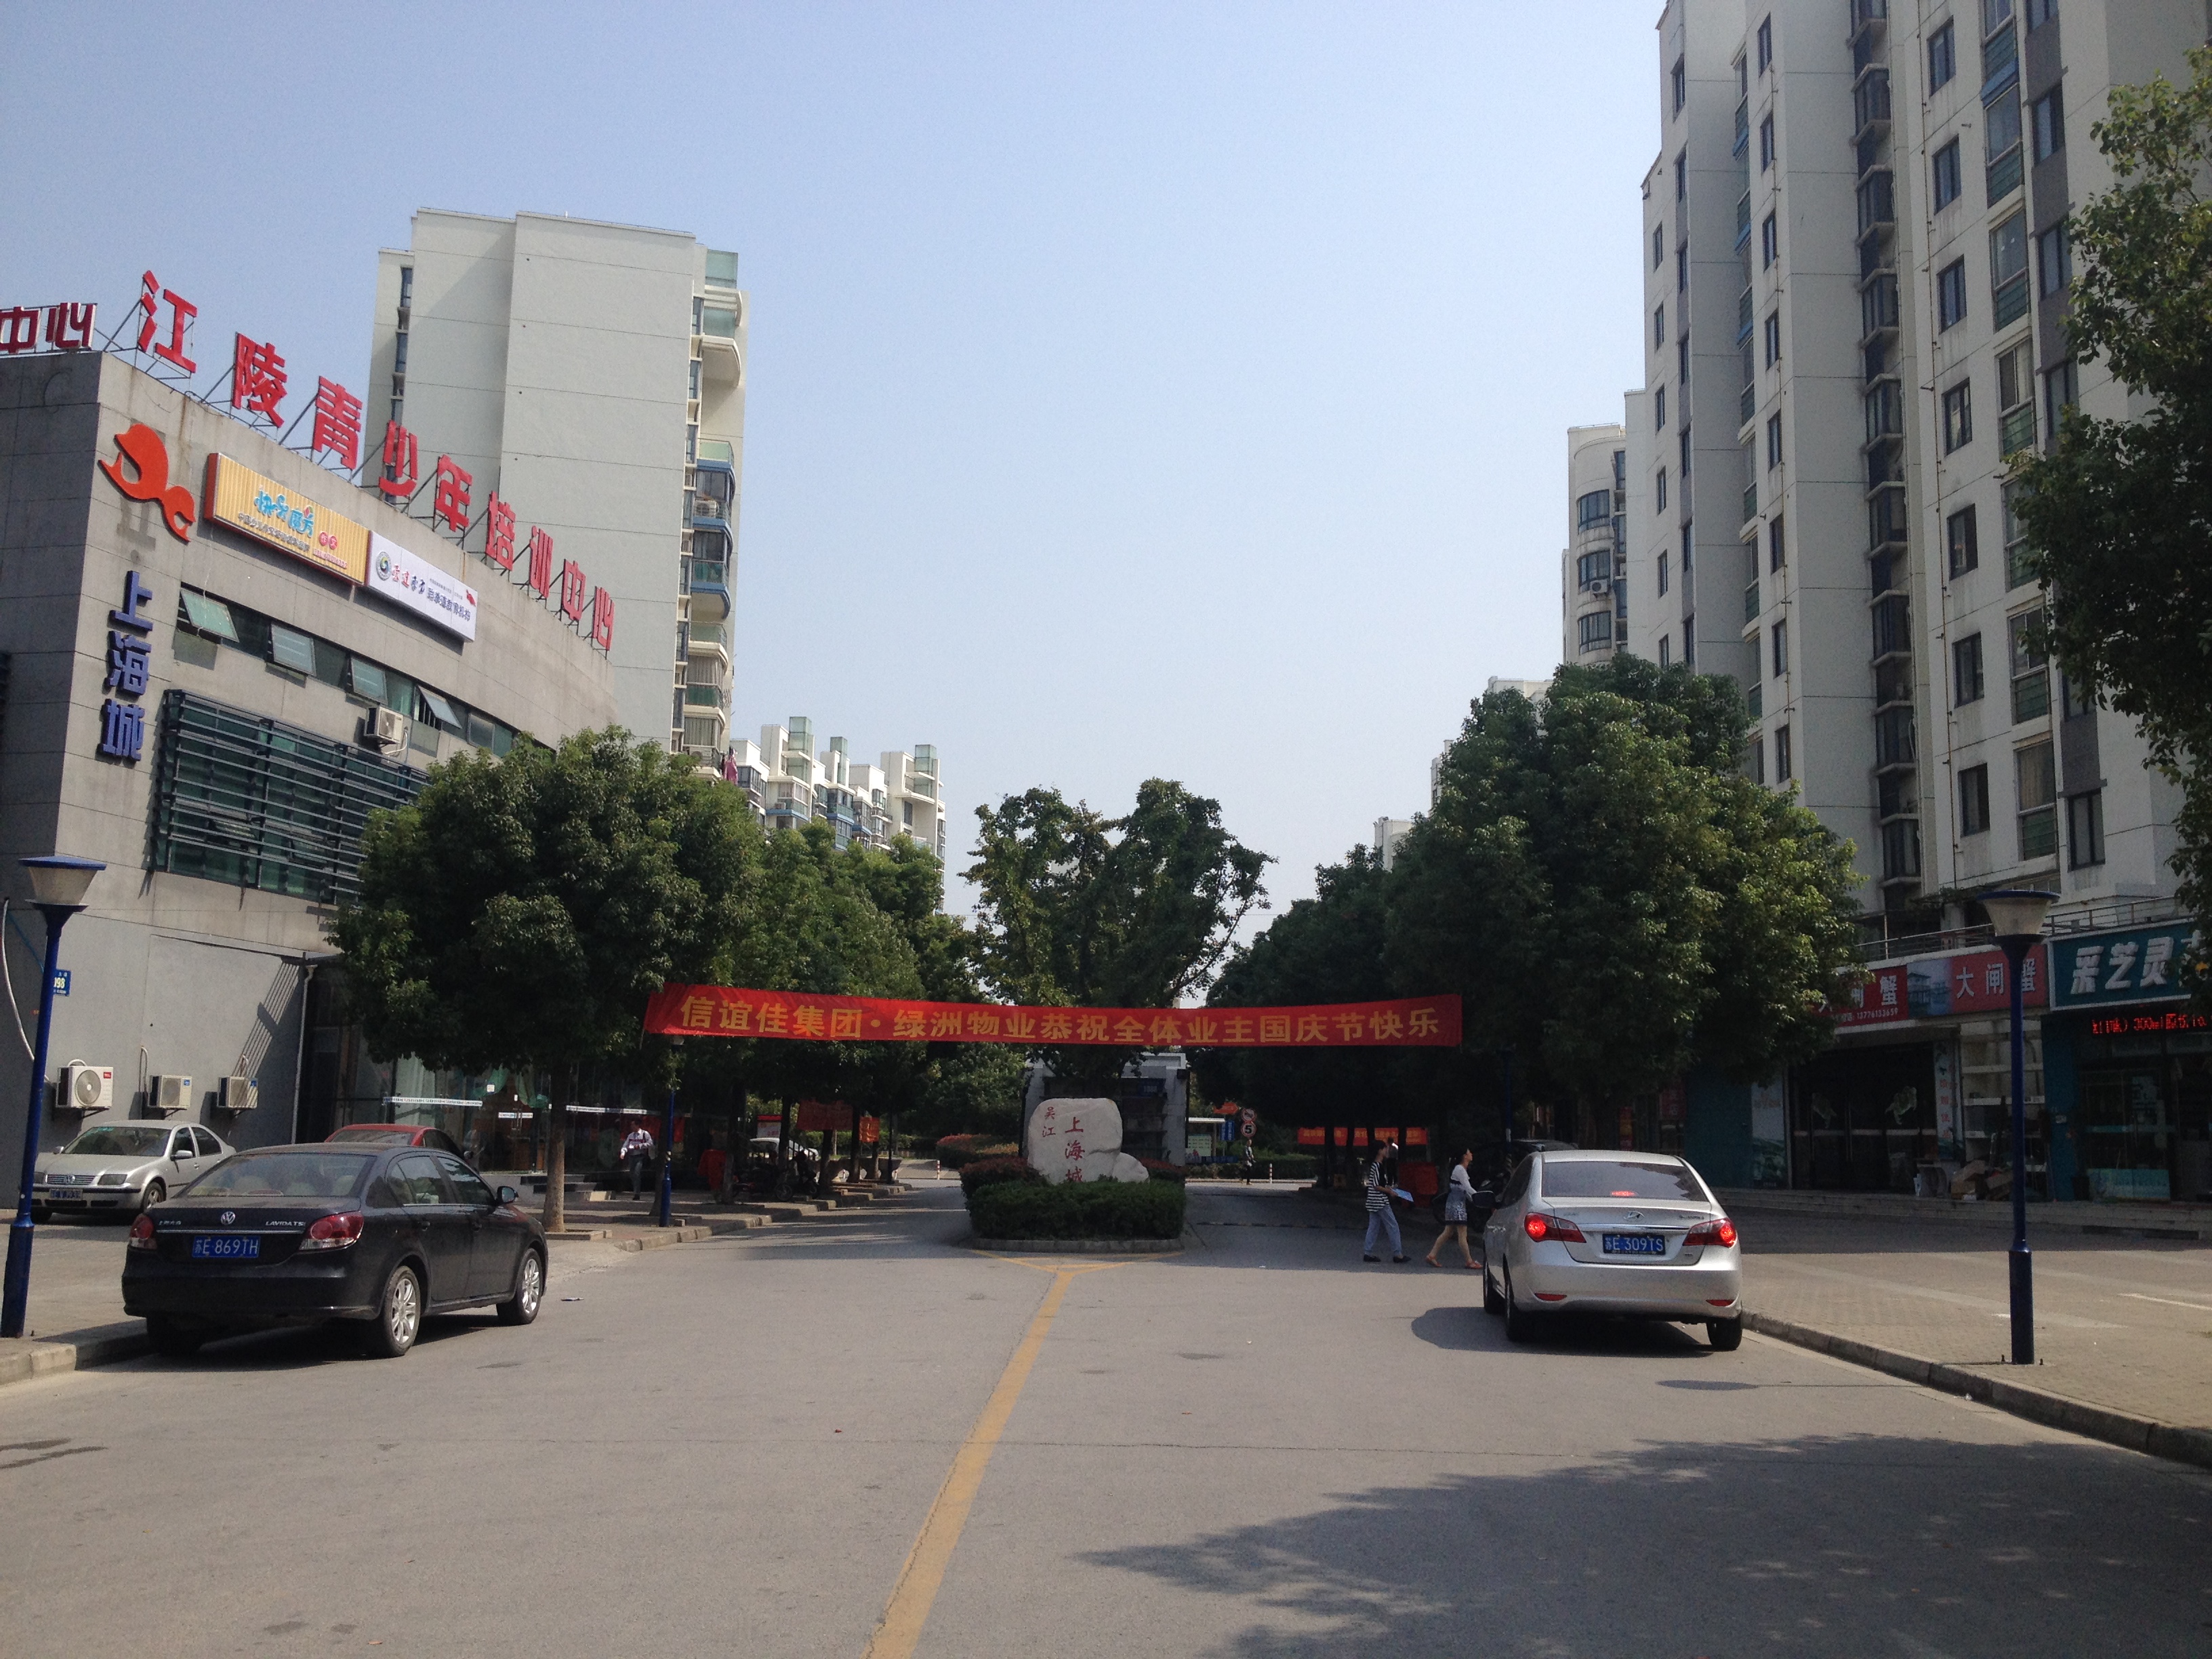 上海城 2室2厅2卫 102平方米 150万出售